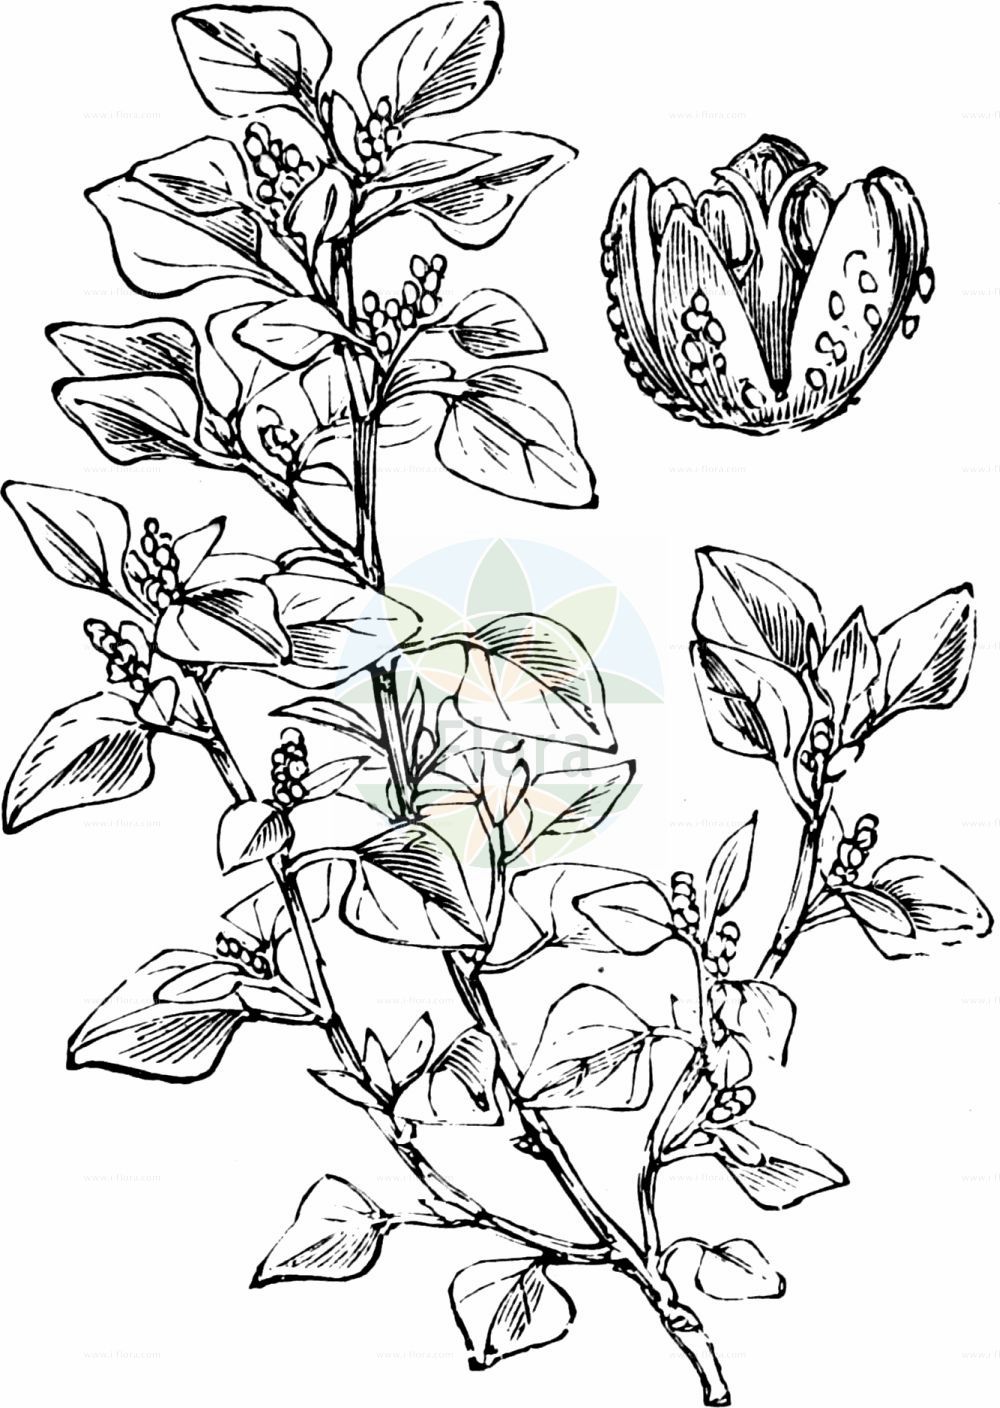 Historische Abbildung von Chenopodium vulvaria (Stinkender Gänsefuß - Stinking Goosefoot). Das Bild zeigt Blatt, Bluete, Frucht und Same. ---- Historical Drawing of Chenopodium vulvaria (Stinkender Gänsefuß - Stinking Goosefoot). The image is showing leaf, flower, fruit and seed.(Chenopodium vulvaria,Stinkender Gänsefuß,Stinking Goosefoot,Chenopodium foetidum,Chenopodium olidum,Chenopodium vulvaria,Stinkender Gaensefuss,Stinking Goosefoot,Chenopodium,Gänsefuß,Goosefoot,Amaranthaceae,Fuchsschwanzgewächse,Pigweed family,Blatt,Bluete,Frucht,Same,leaf,flower,fruit,seed,Fitch et al. (1880))